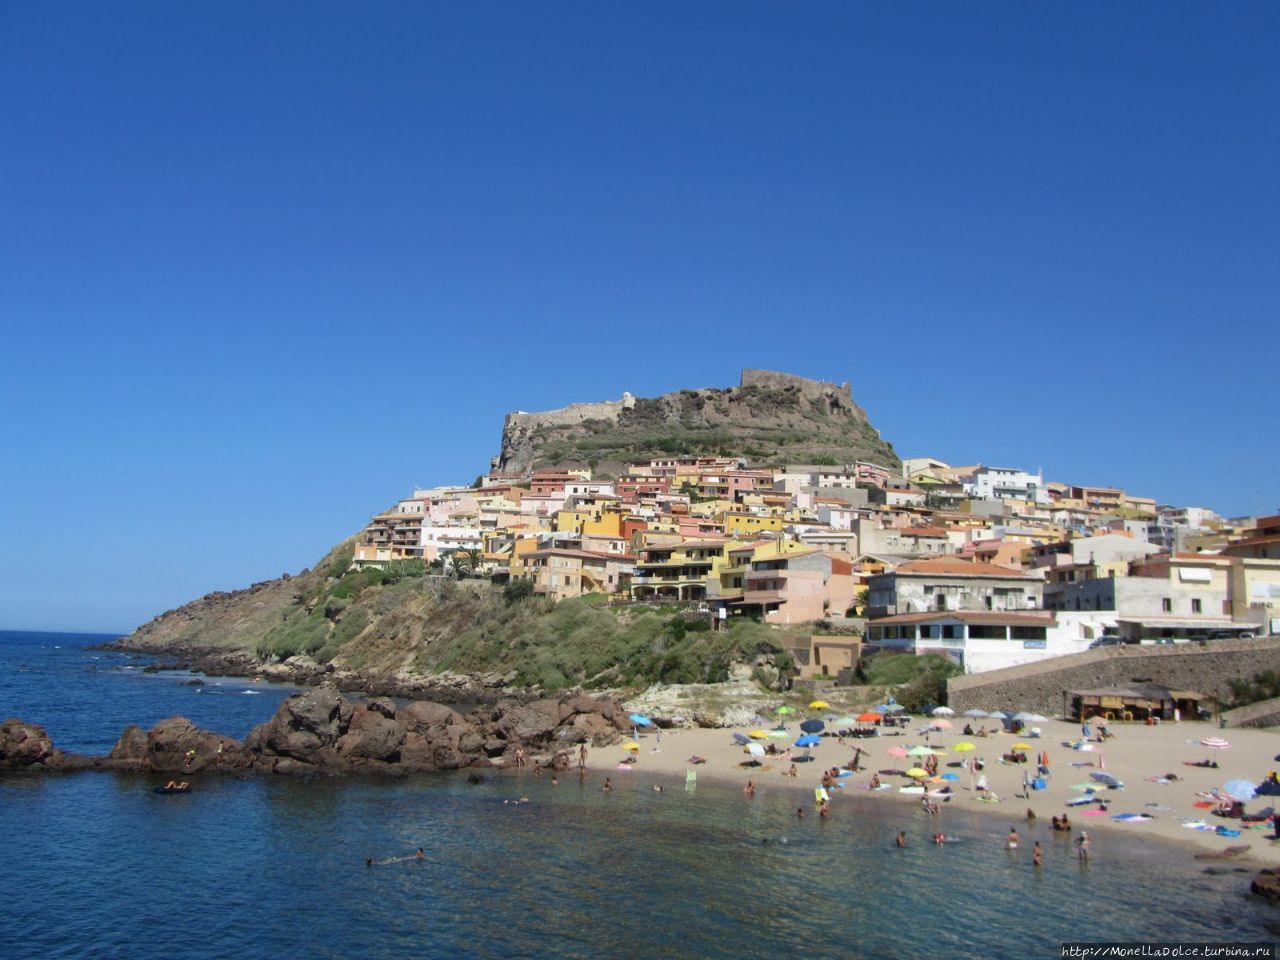 Sardegna: город и крепость Castelsardo Кастельсардо, Италия